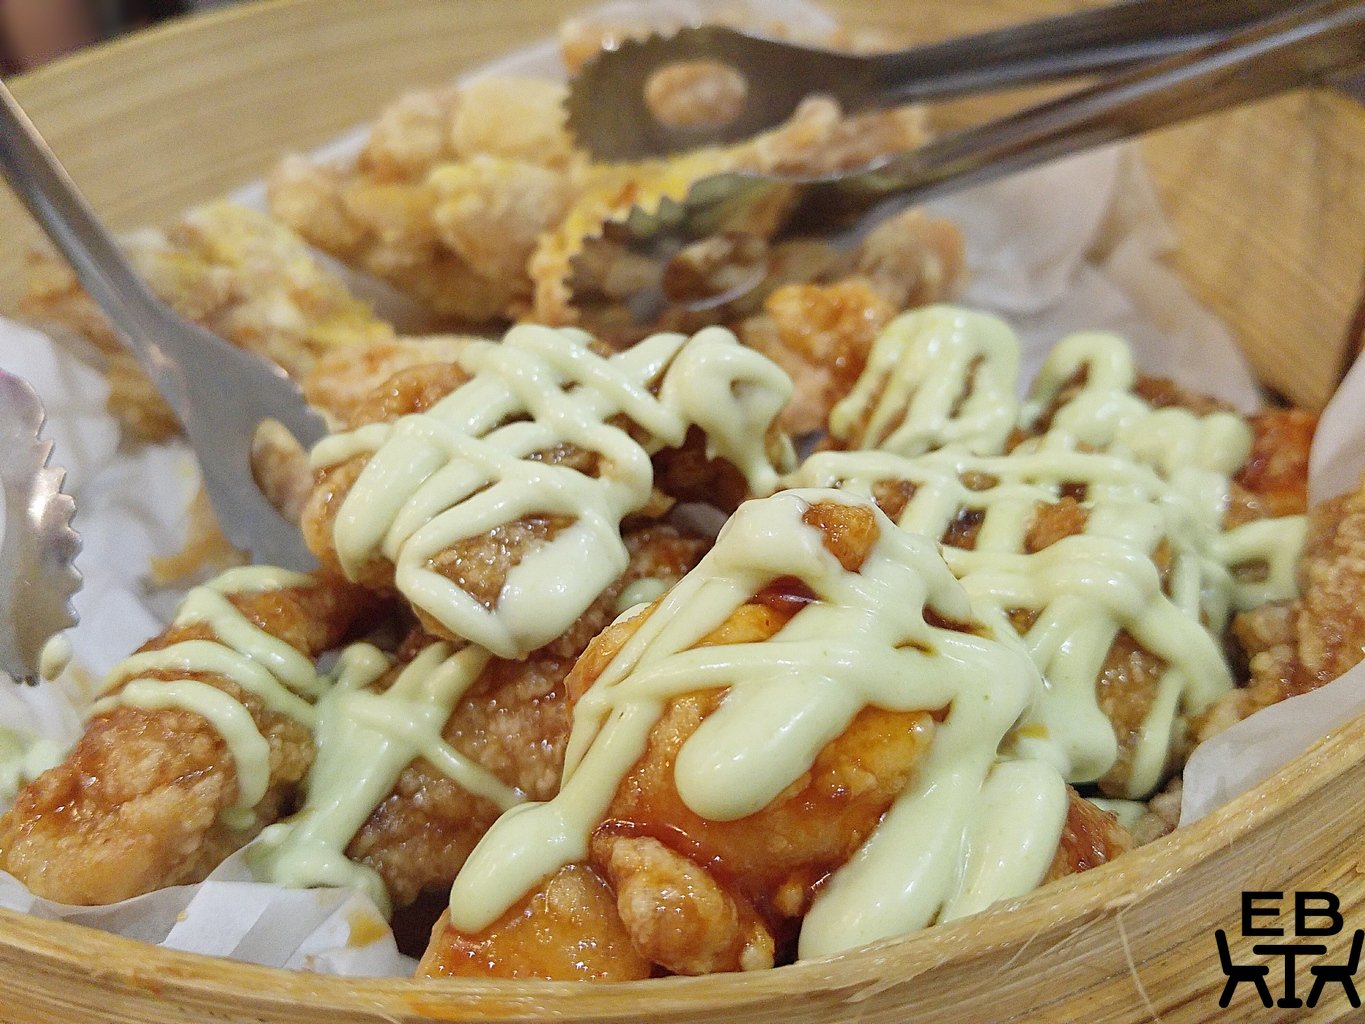 Seoul bistro honey wasabi chicken